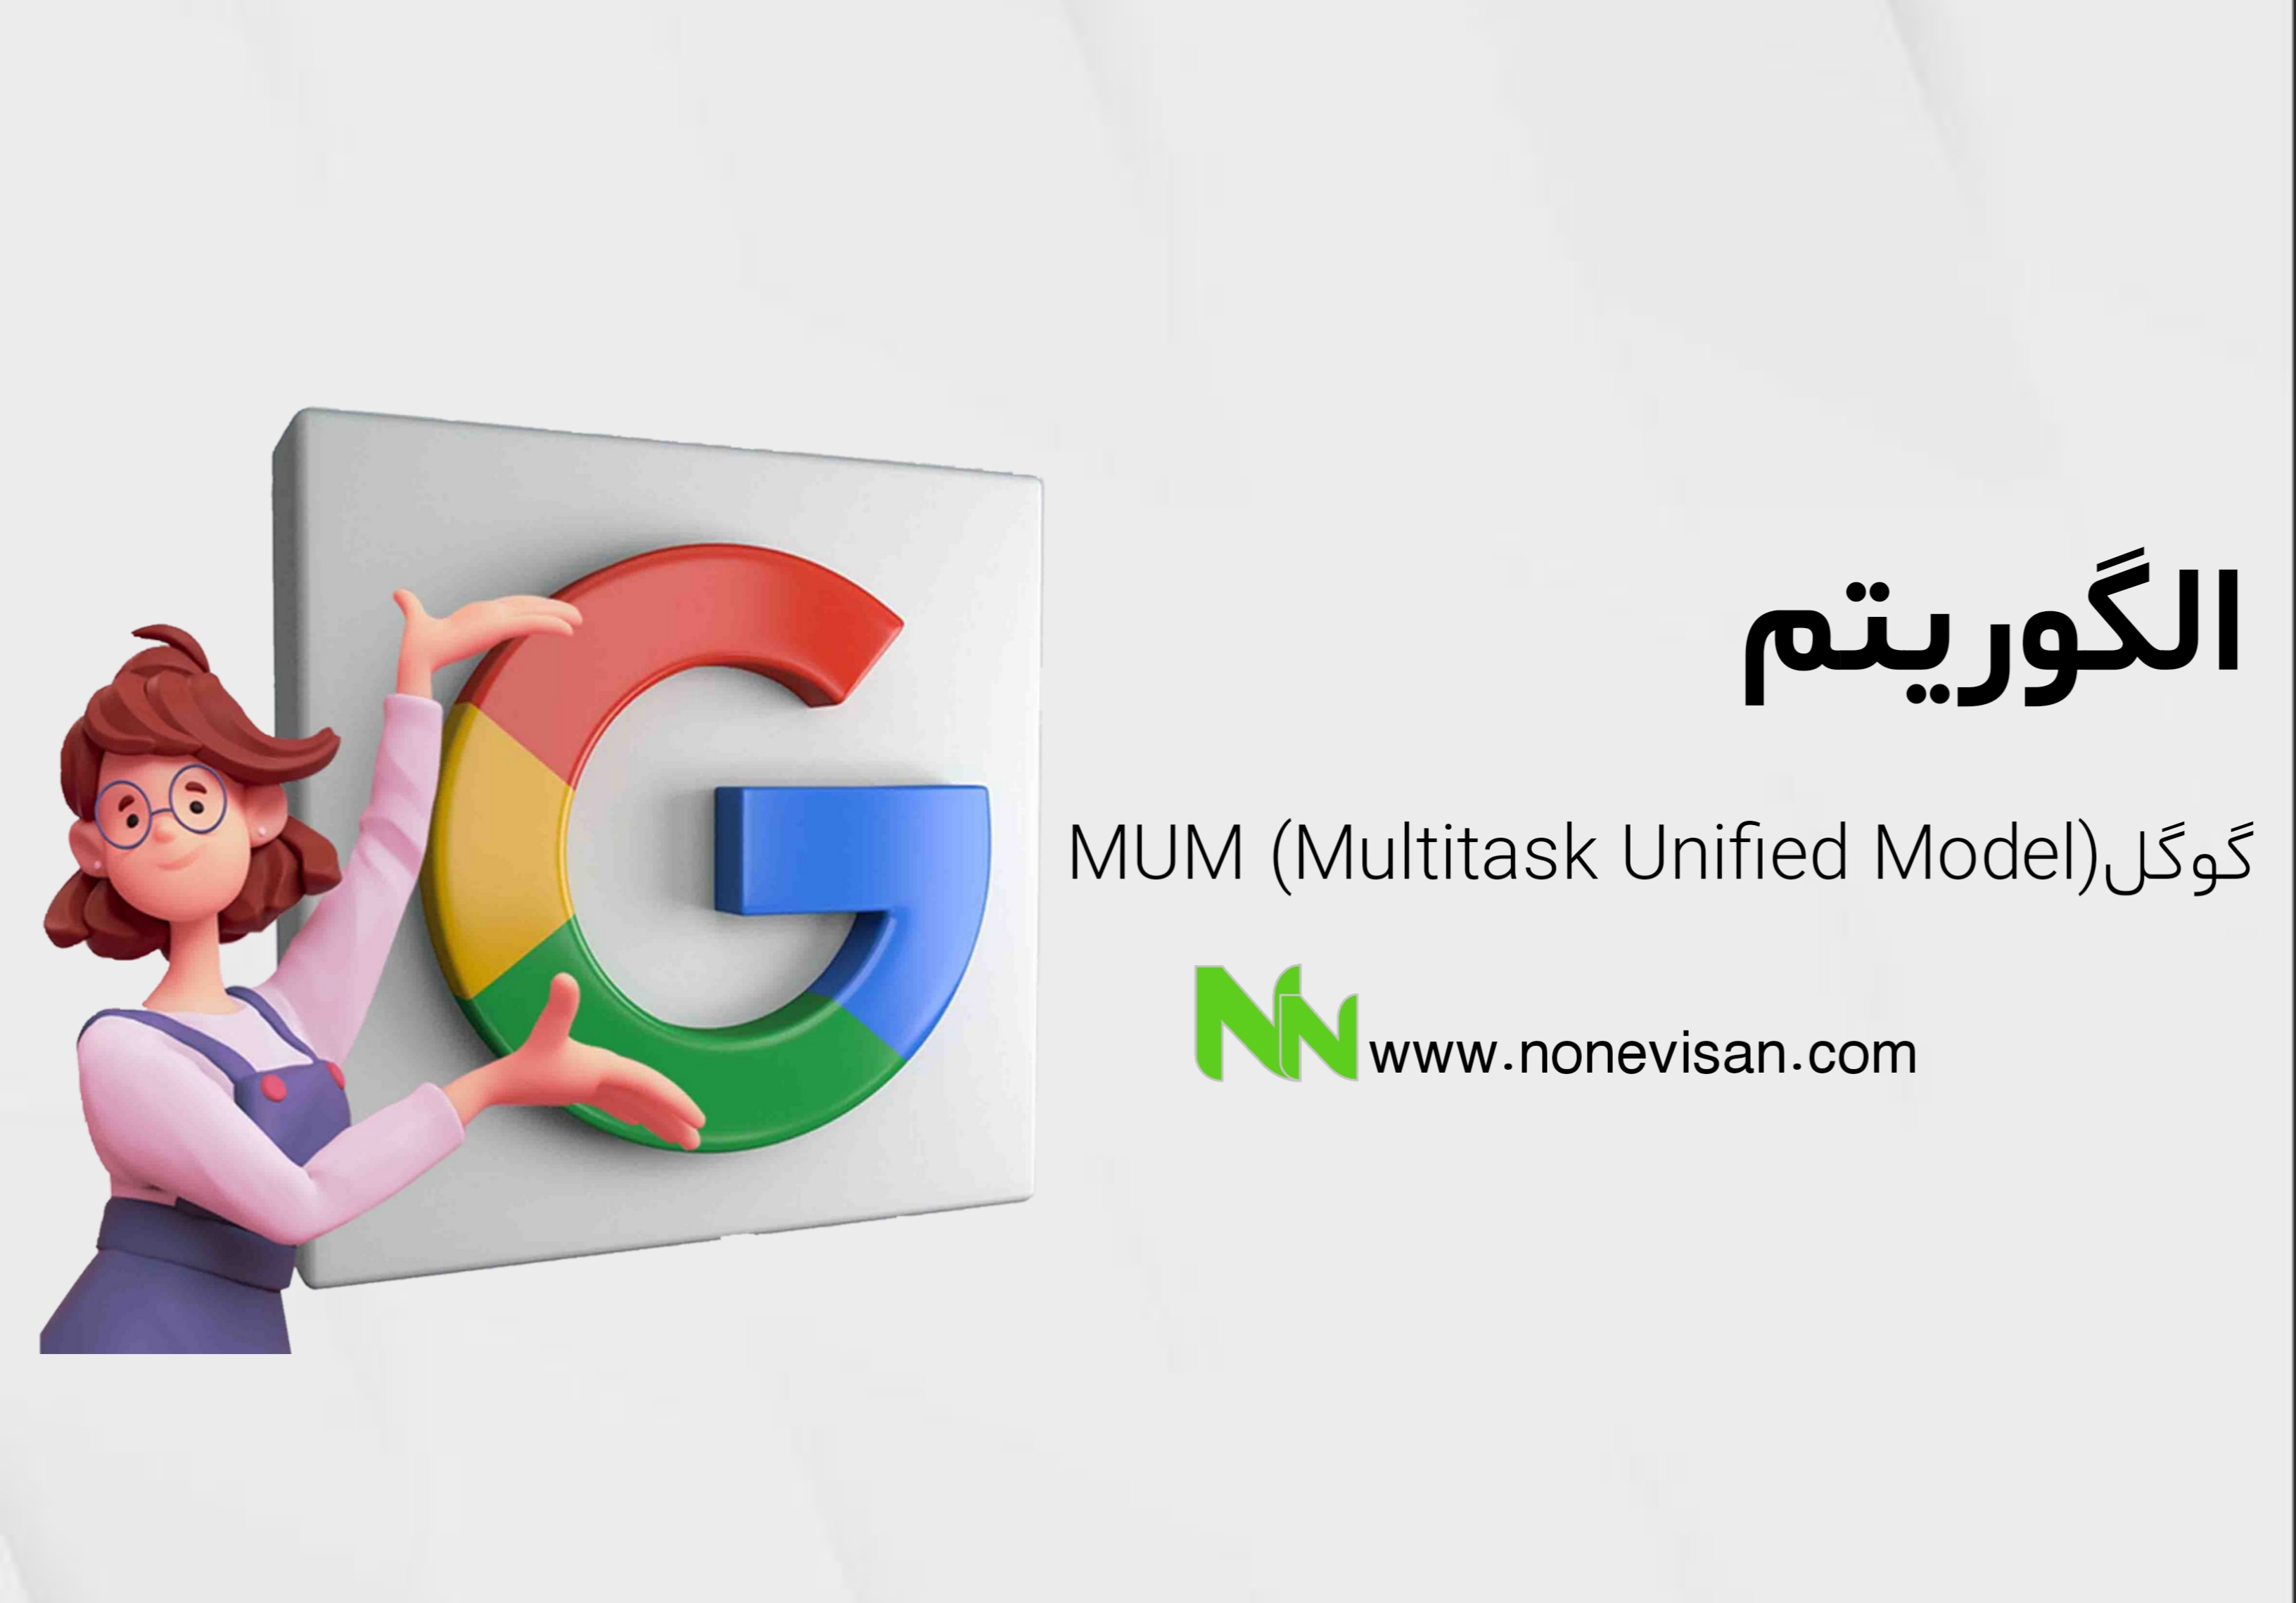 الگوریتم MUM (Multitask Unified Model) گوگل​